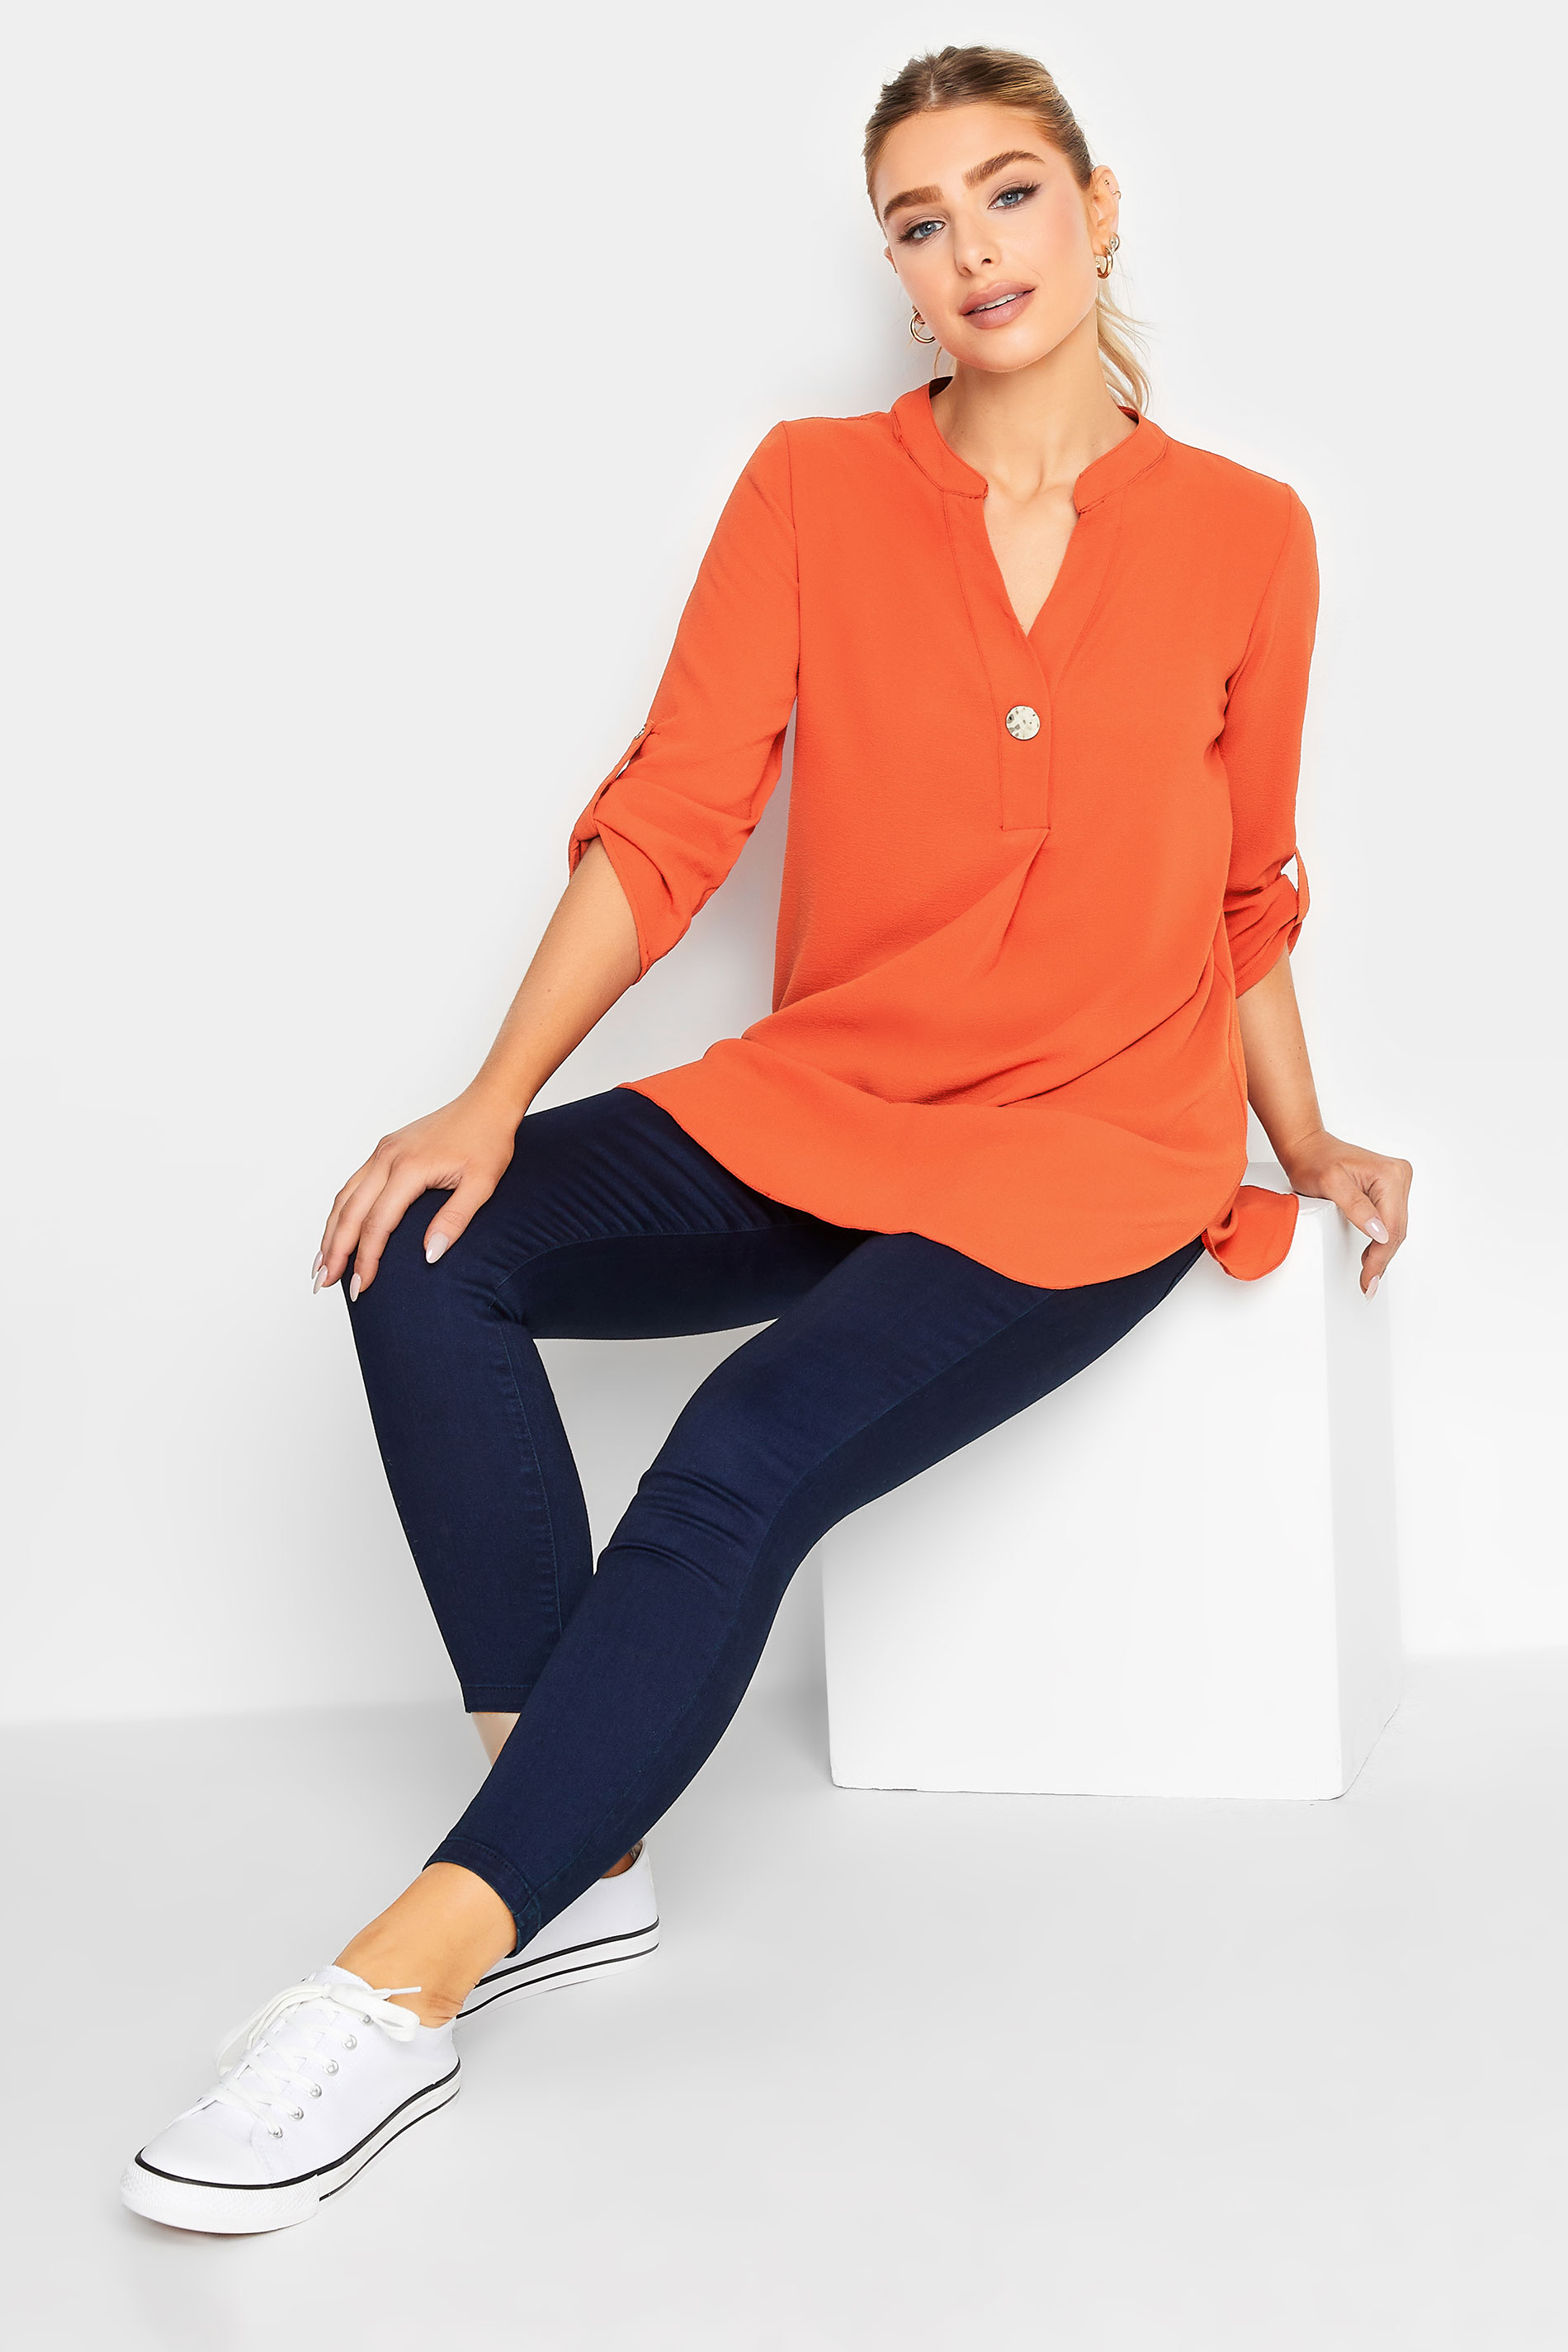 M&Co Orange Long Sleeve Button Blouse | M&Co  2